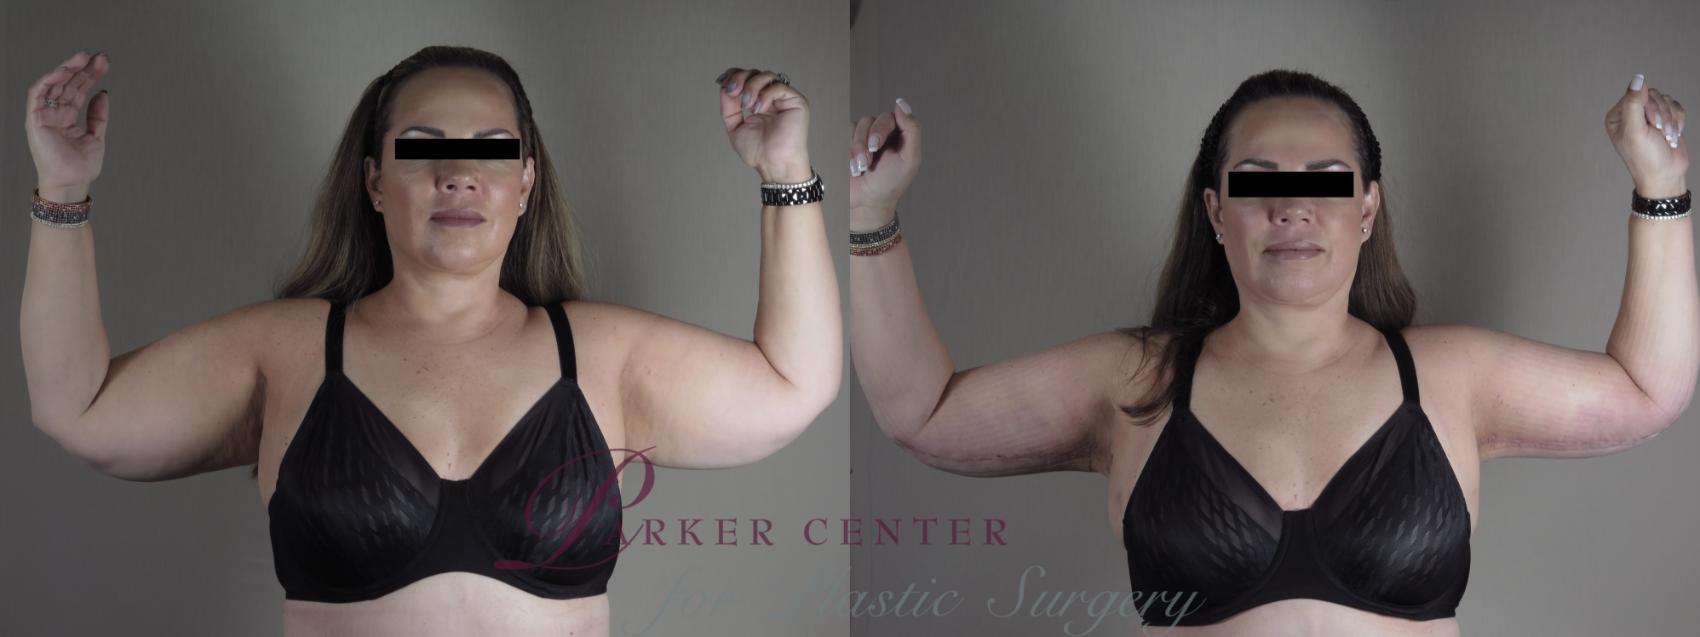 Upper Arm Rejuvenation Case 1287 Before & After Front | Paramus, NJ | Parker Center for Plastic Surgery